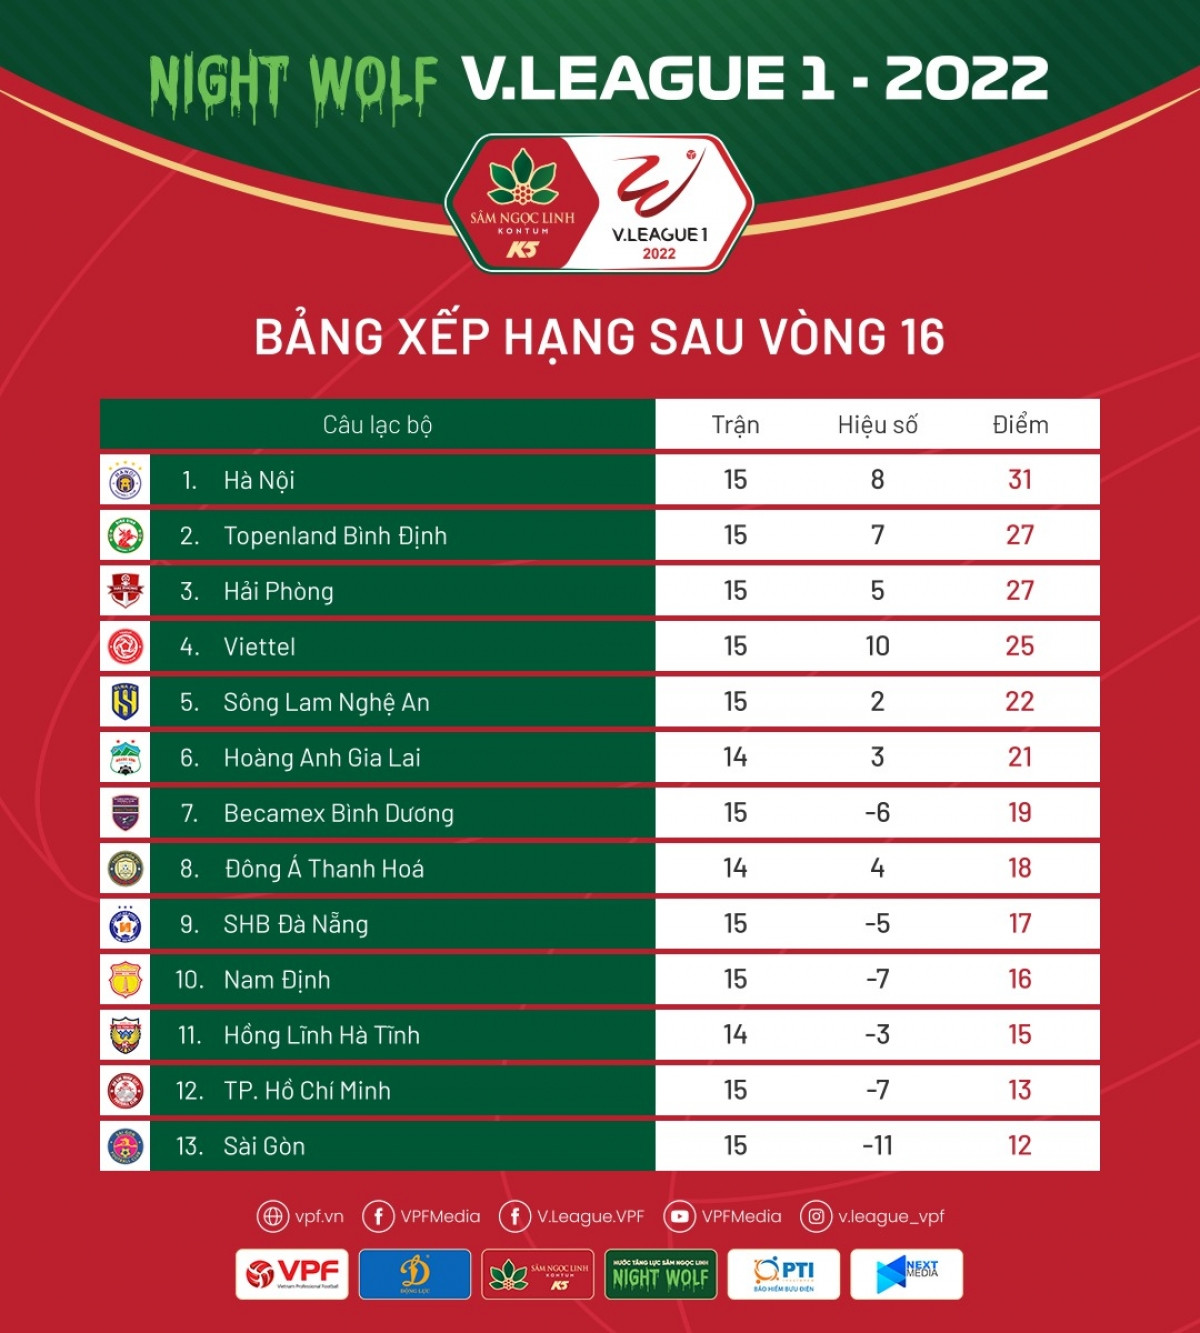 bang xep hang v-league 2022 sau vong 16 ha noi fc tho phao hinh anh 1